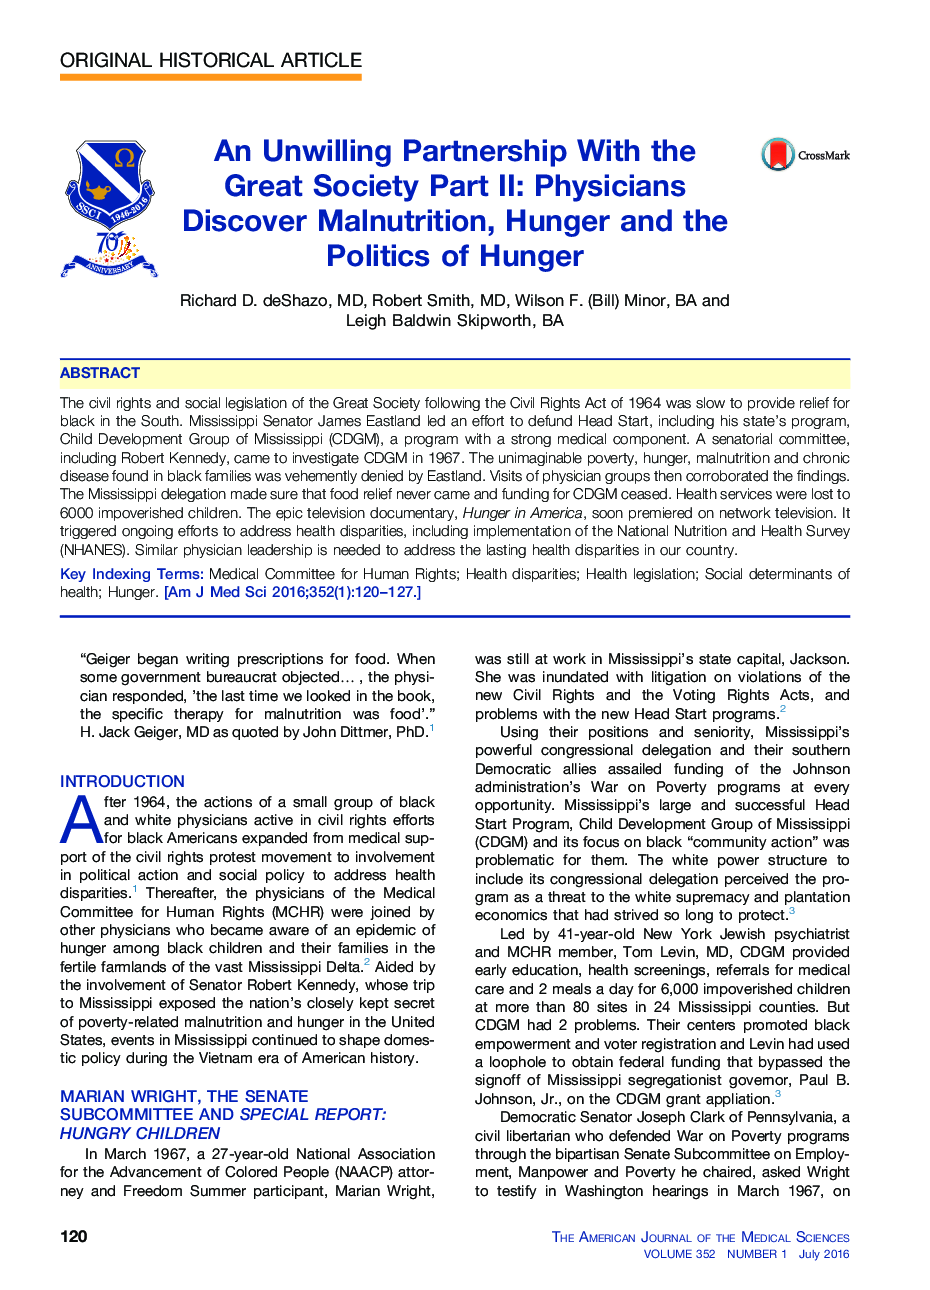 مشارکت ناخواسته با جامعه بزرگ بخش دوم: پزشکان کشف سوء تغذیه، گرسنگی و سیاست گرسنگی 